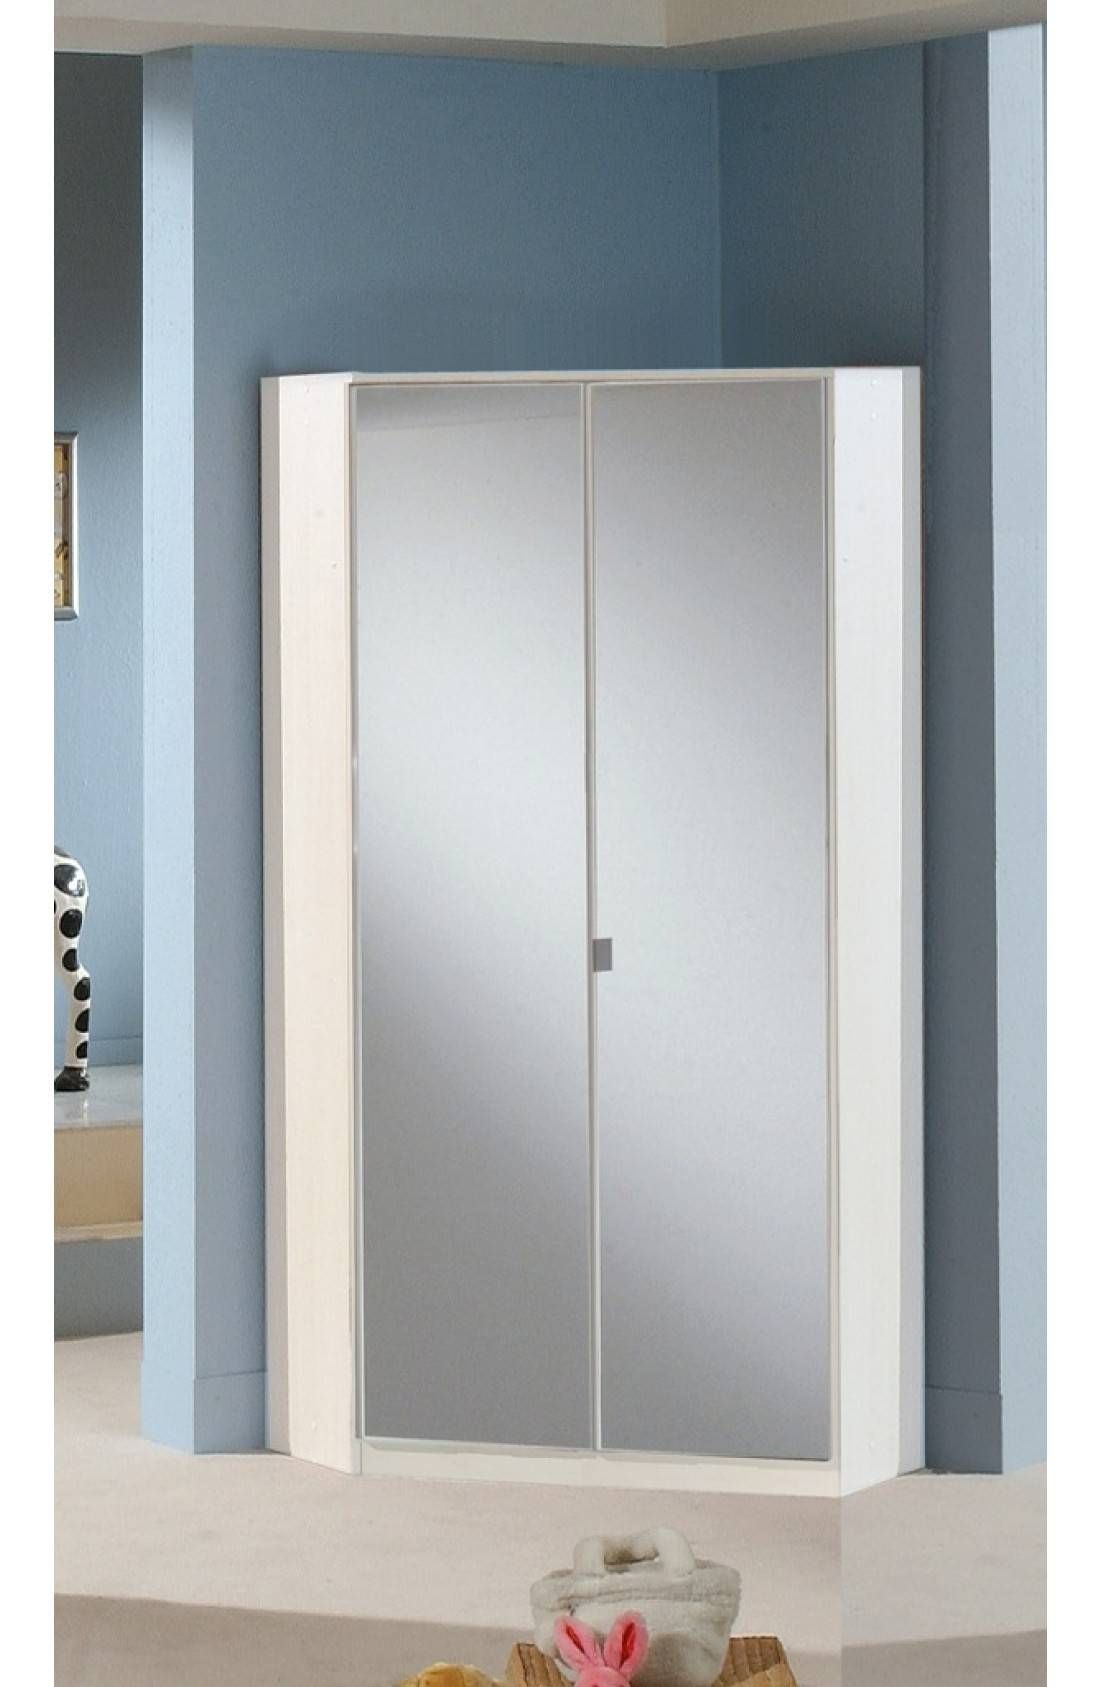 Slumberhaus Gamma German Made Modern White And Mirror 2 Door Intended For 2 Door Corner Wardrobes (View 2 of 15)